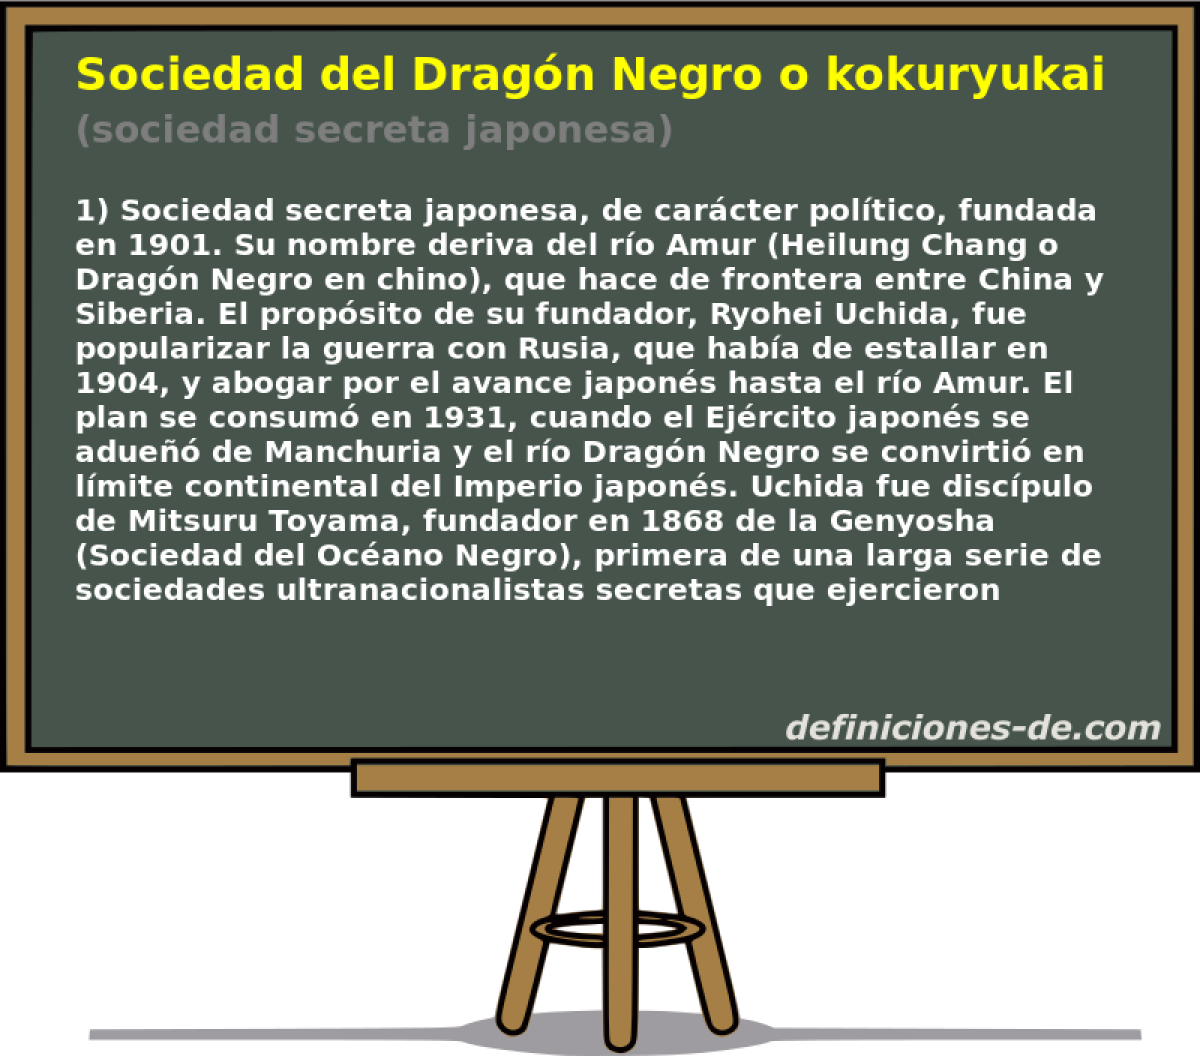 Sociedad del Dragn Negro o kokuryukai (sociedad secreta japonesa)